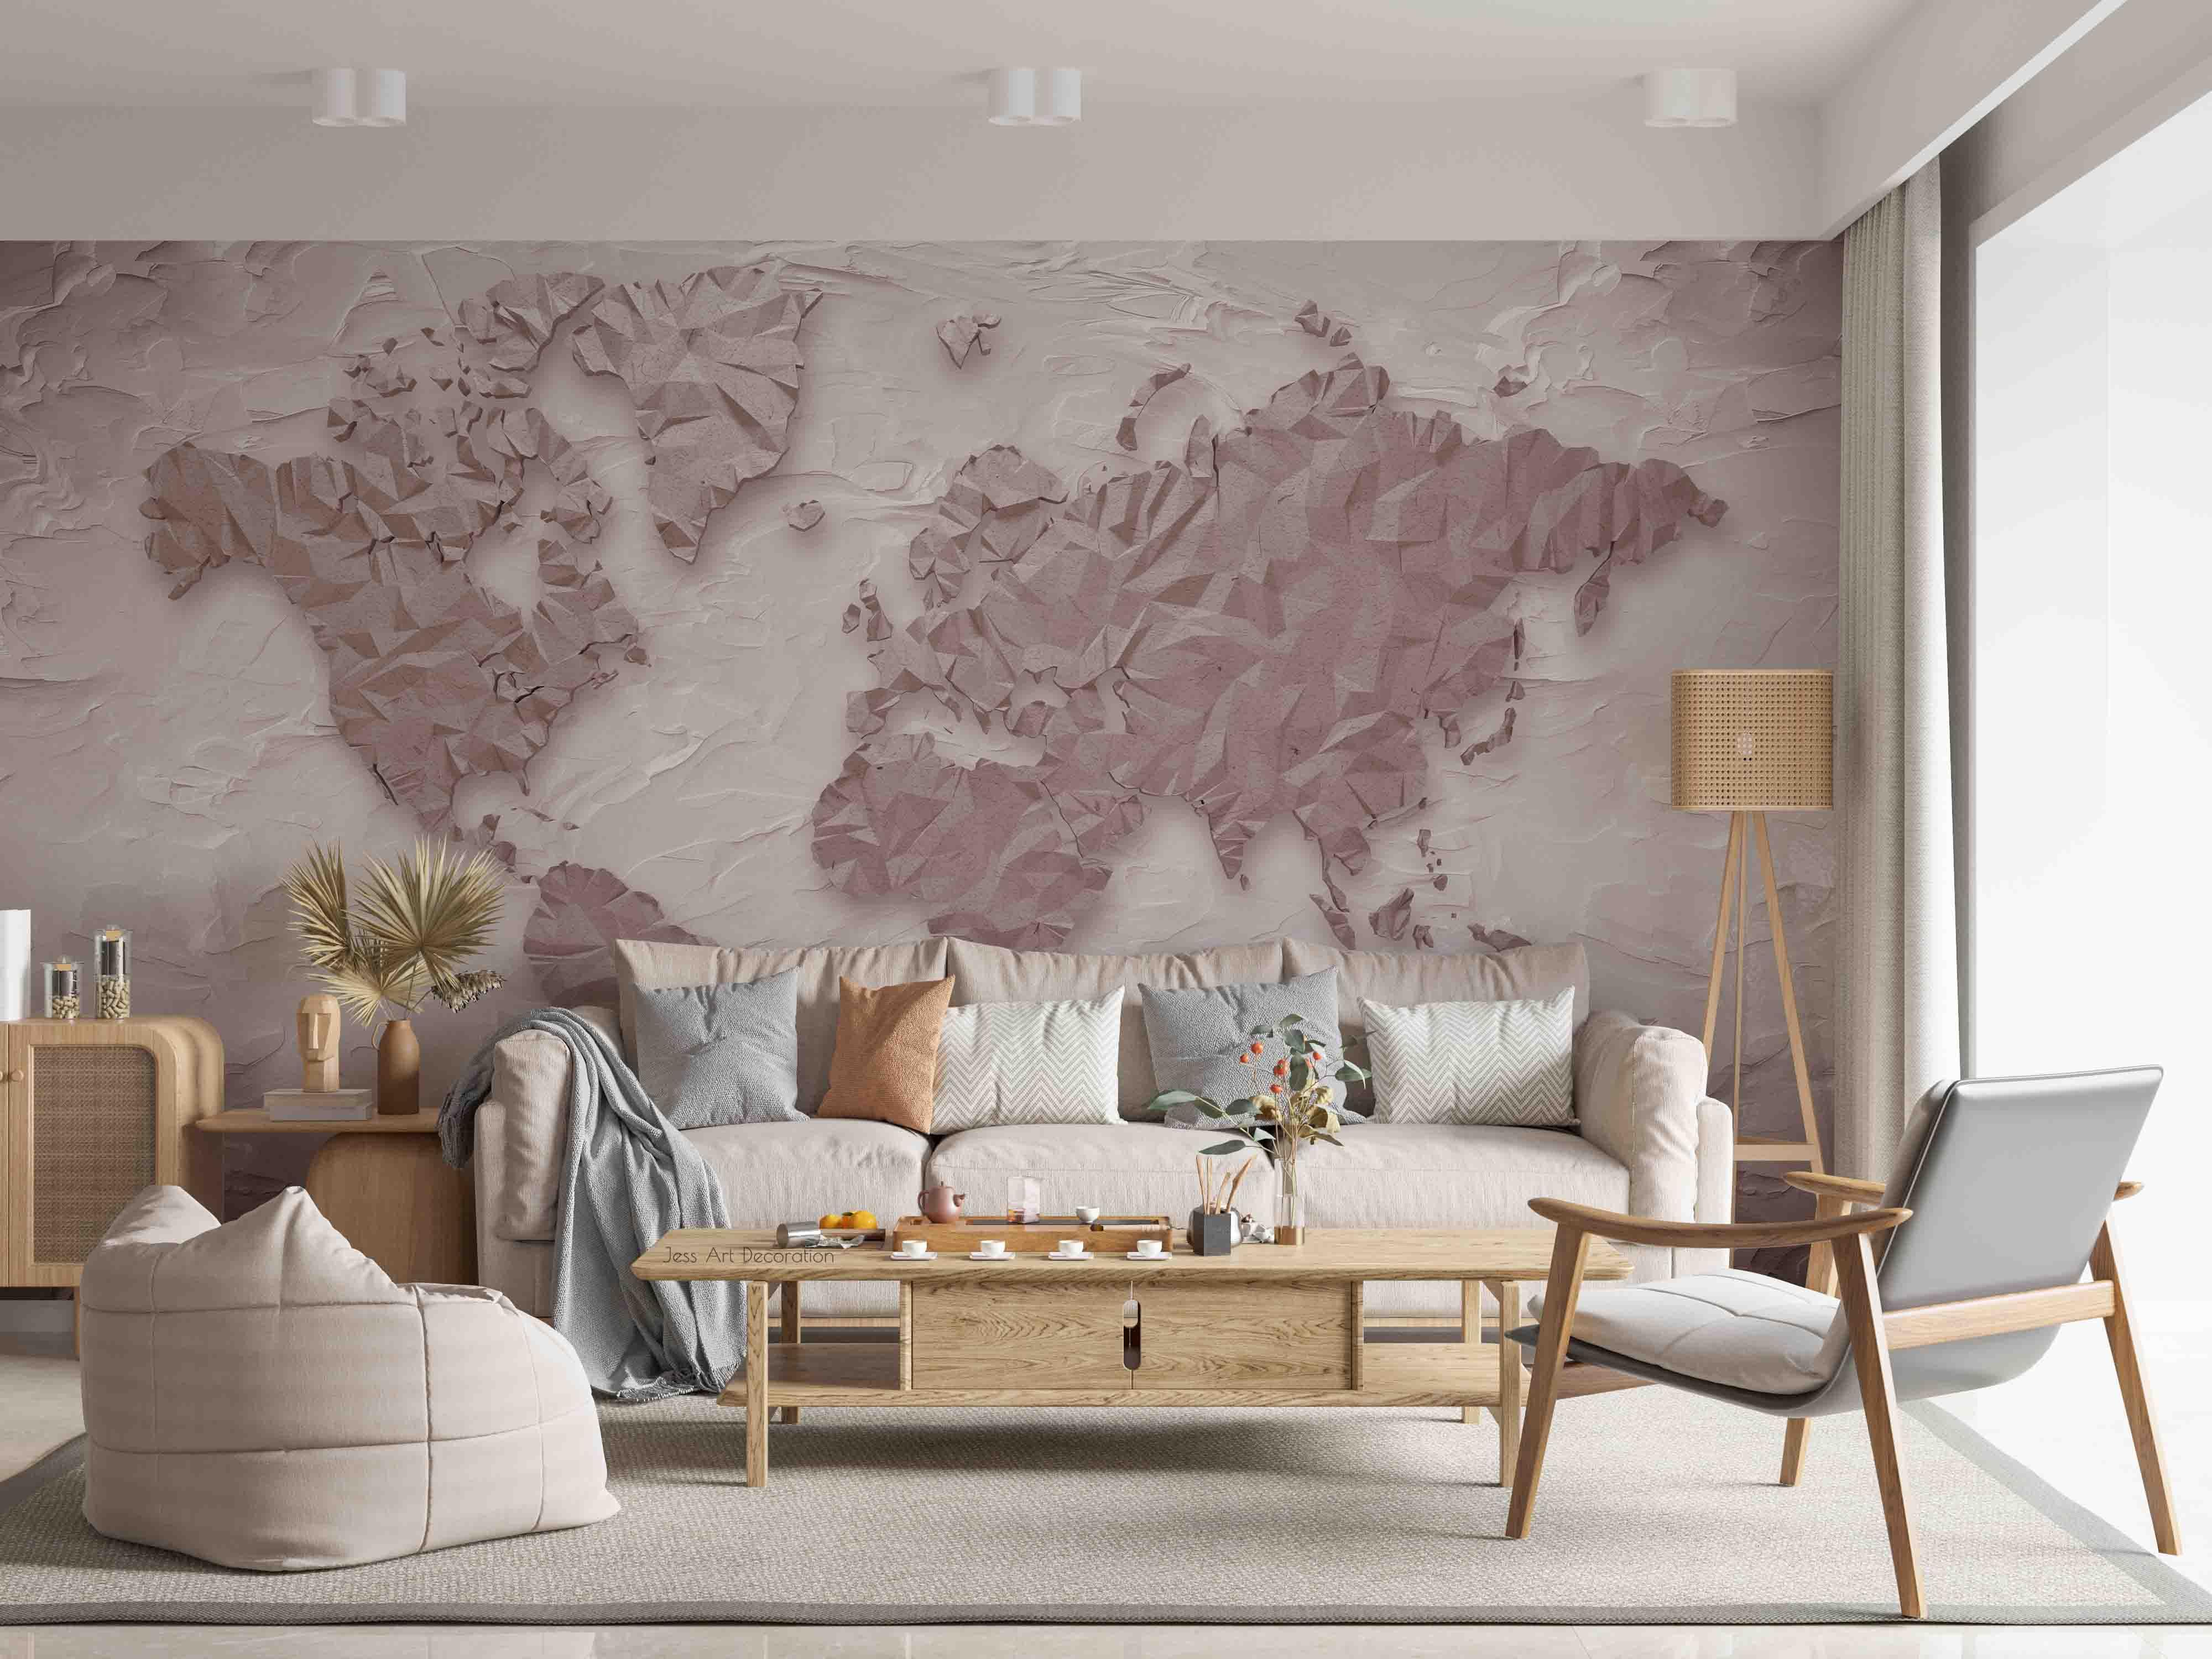 3D Relief World Map Wall Mural Wallpaper GD 3039- Jess Art Decoration